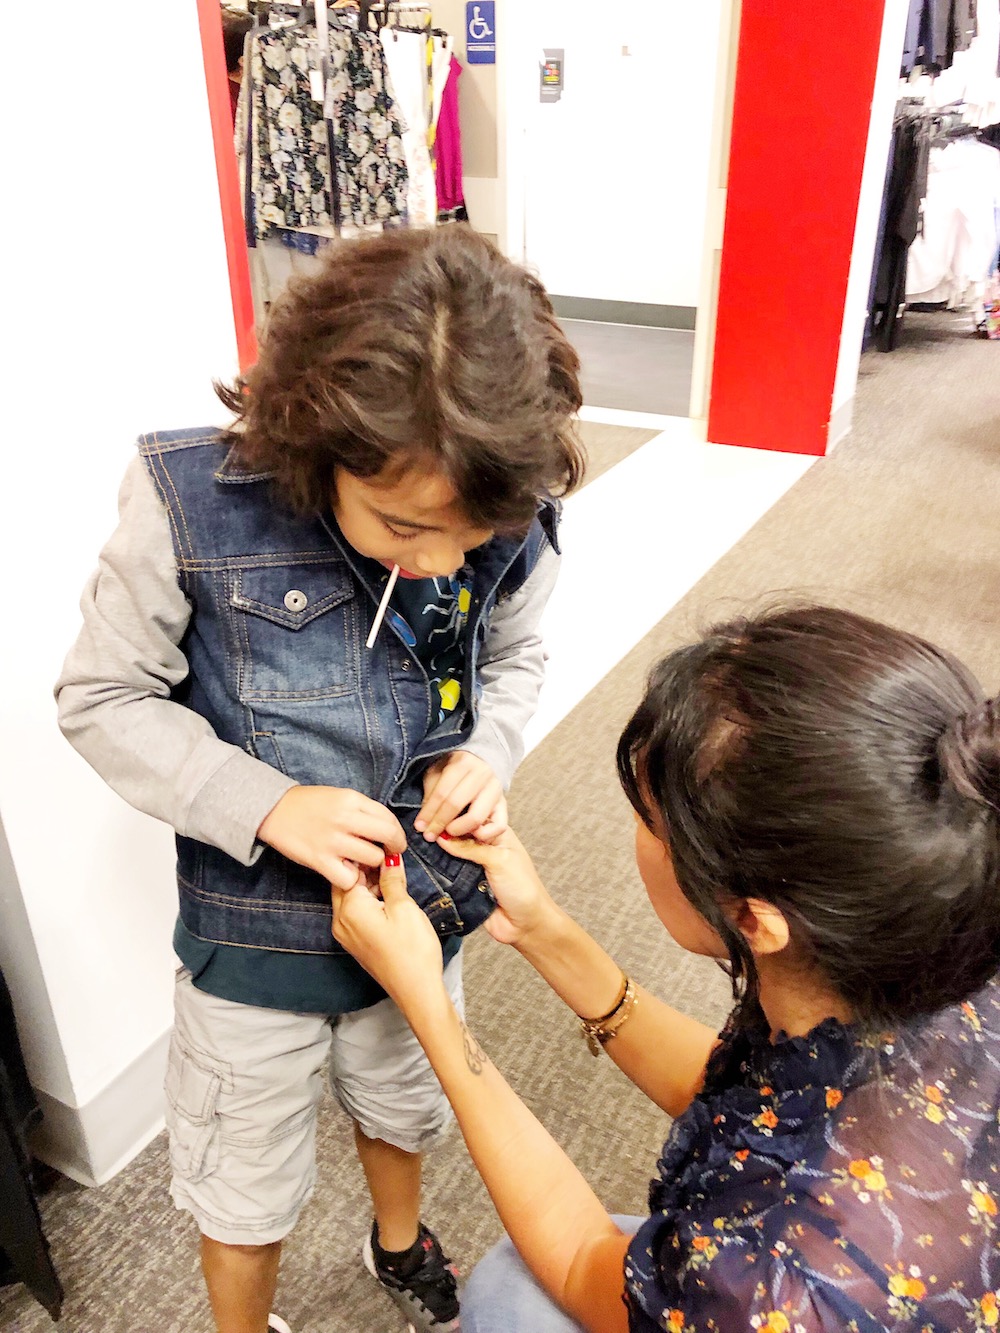 kids jean jacket at Macy's at MainPlace Mall in Santa Ana | livingmividaloca.com | #livingmividaloca #shopmainplace #santaana #mainplacemall #macys #kidstyle #sportystyle